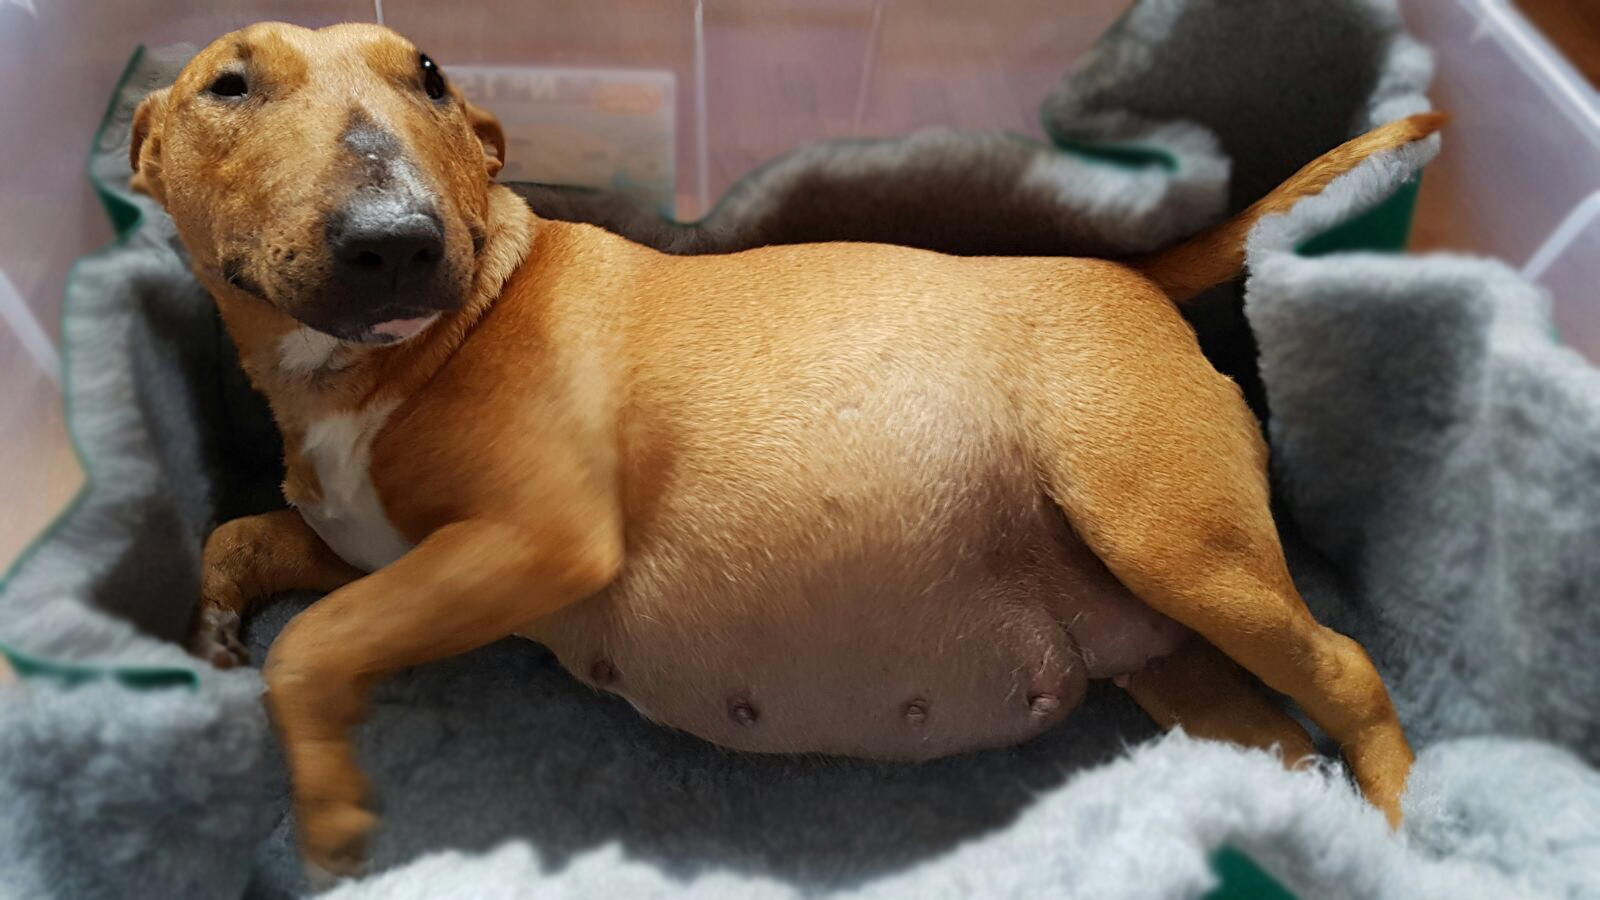 Bull Terrier etapa embarazo